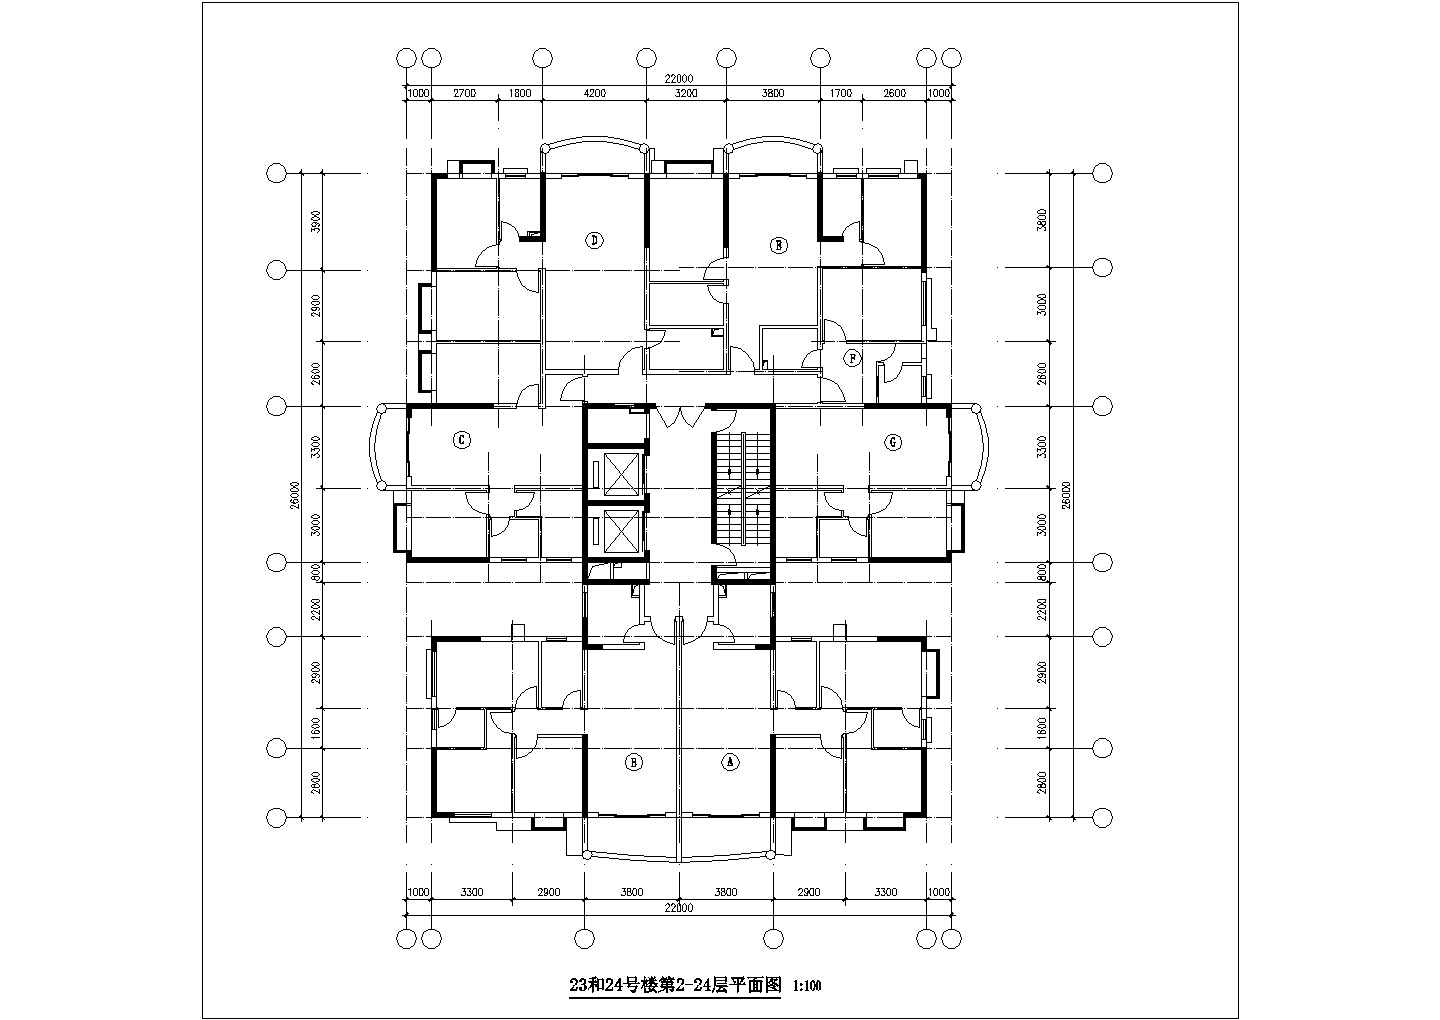 金碧花园住宅楼户型平面设计施工图纸